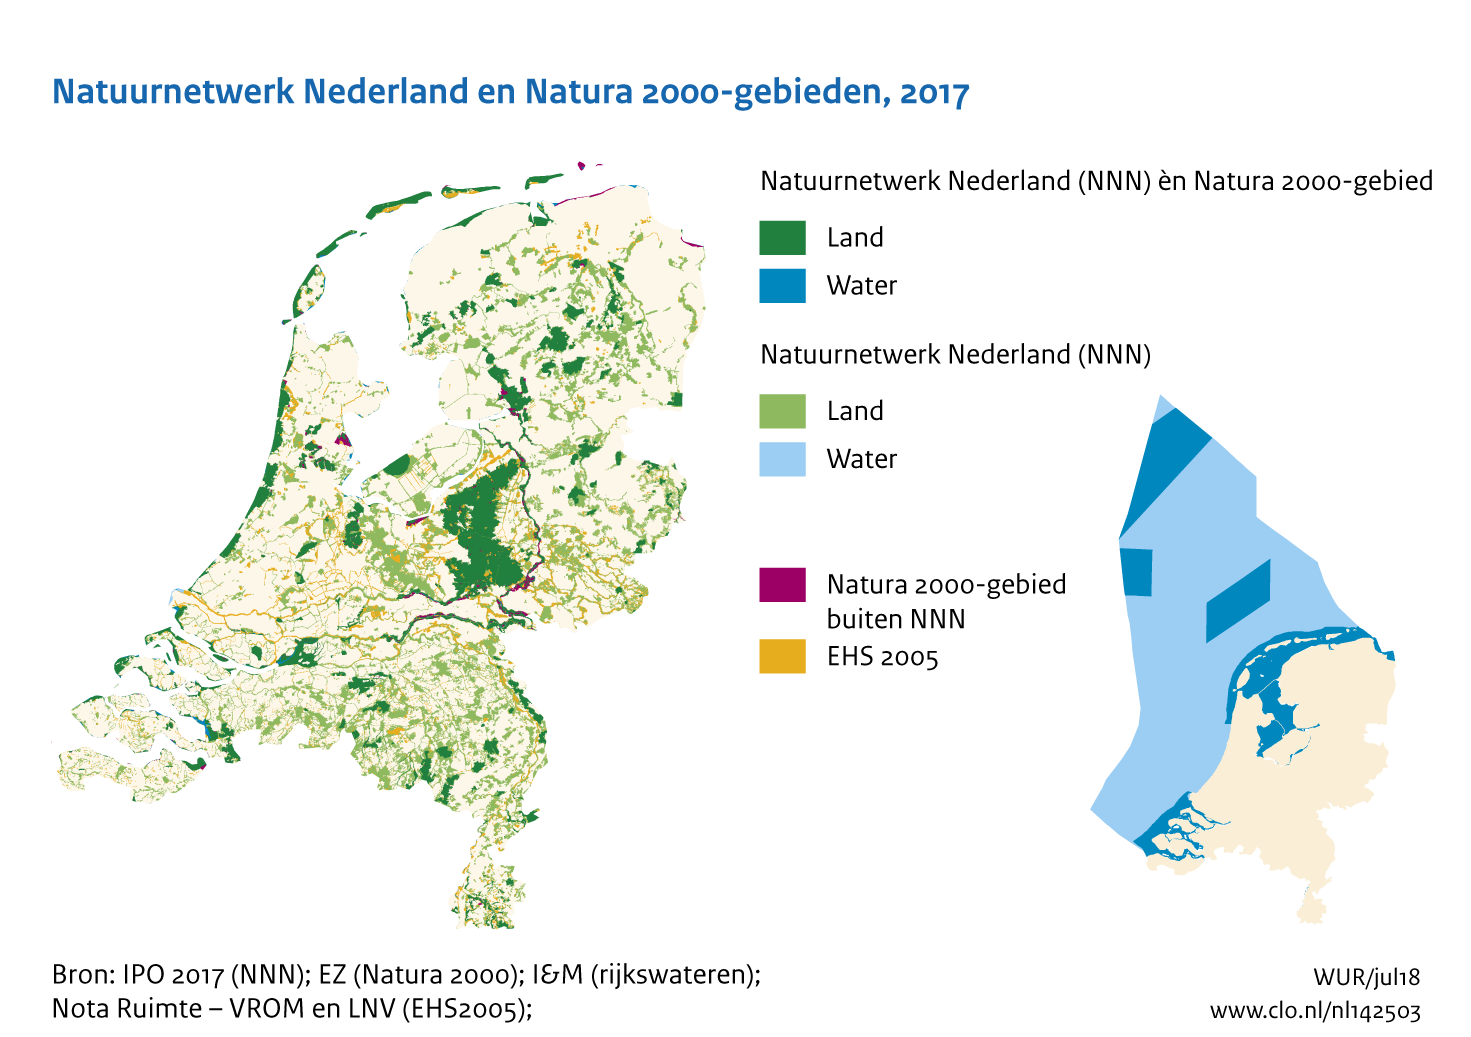 Figuur NNN en Natura 2000-gebieden. In de rest van de tekst wordt deze figuur uitgebreider uitgelegd.